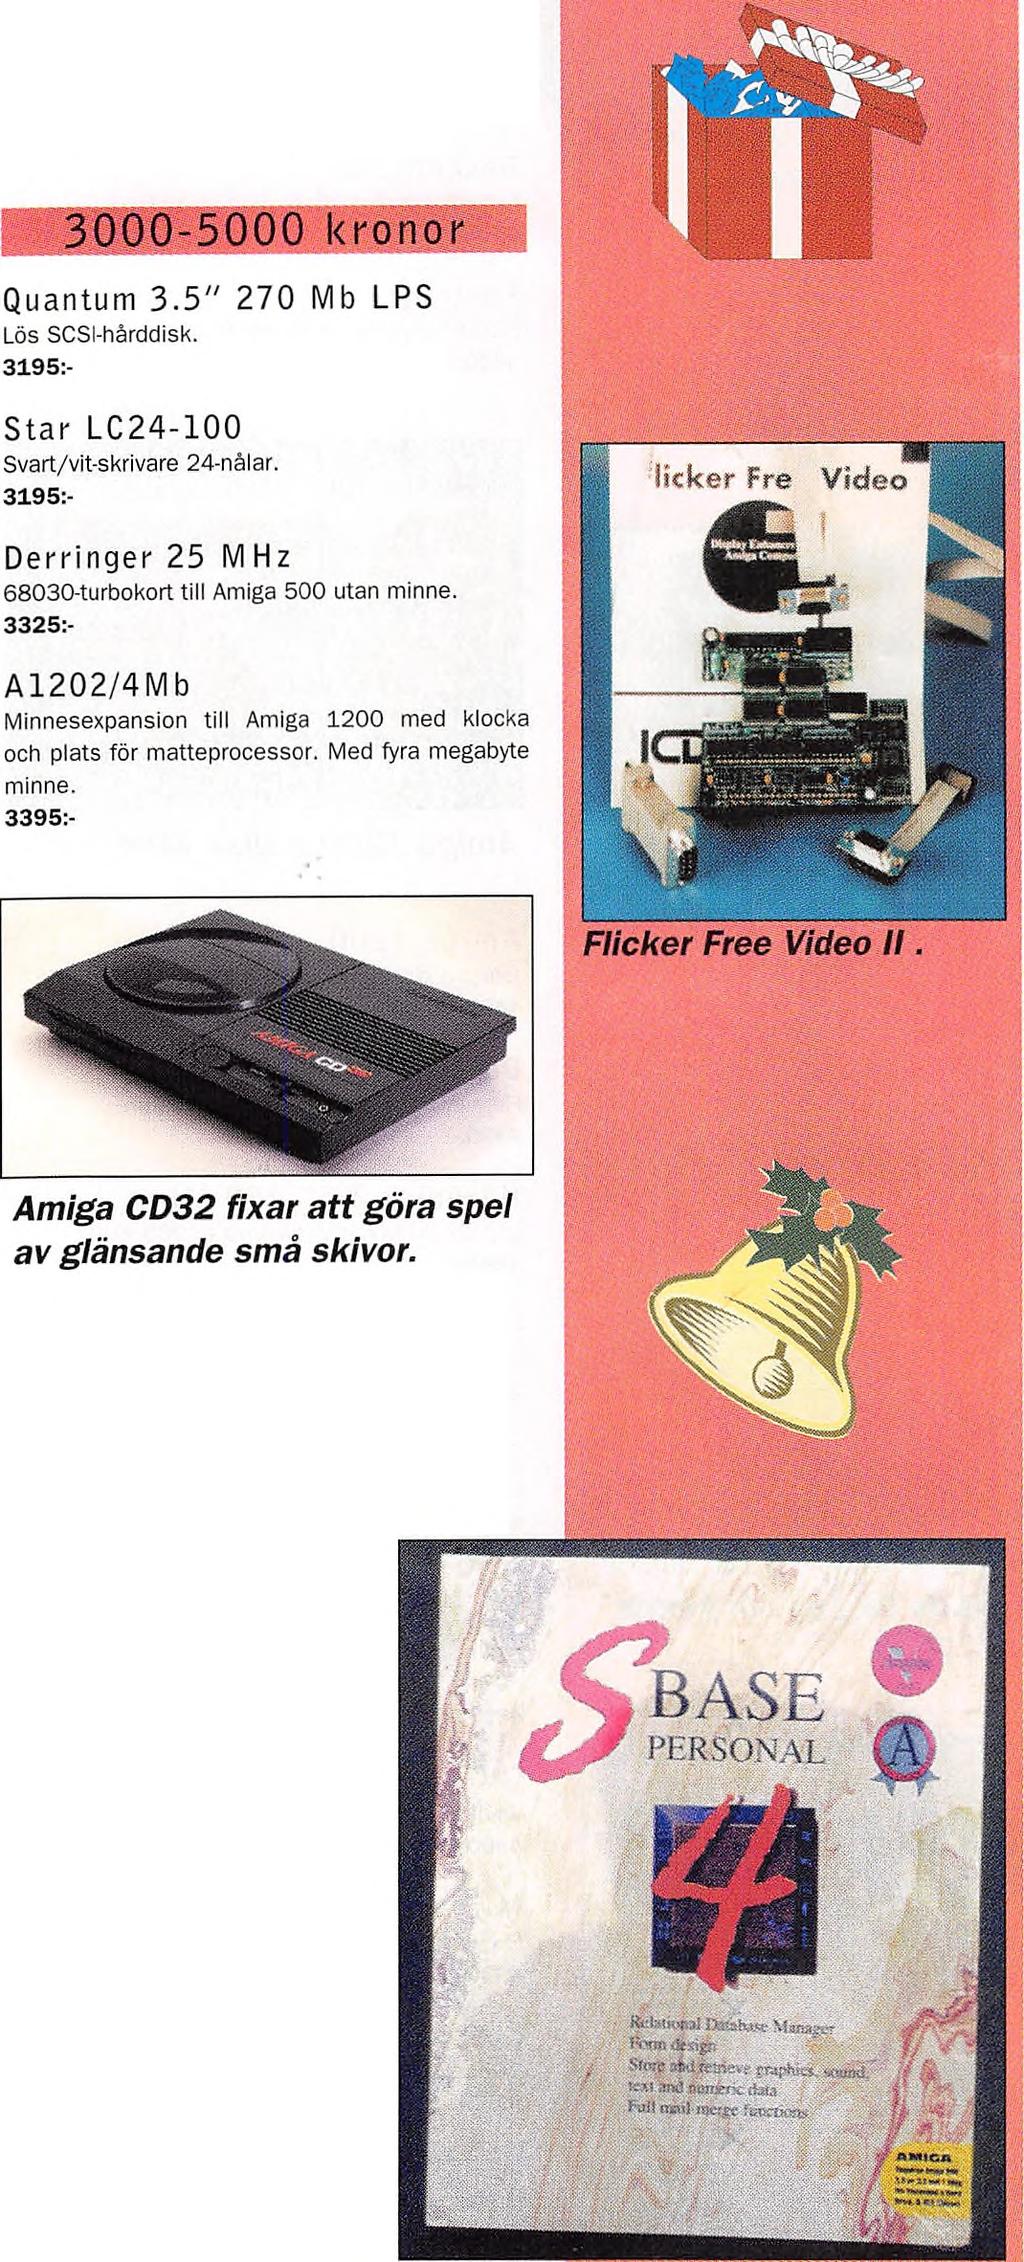 2000-3000 kronor A1202/1M b Minnesexpansion till Amiga 1200 med klocka och plats för matteprocessor. Med en megabyte minne. SuperBase 4 Professional v l.